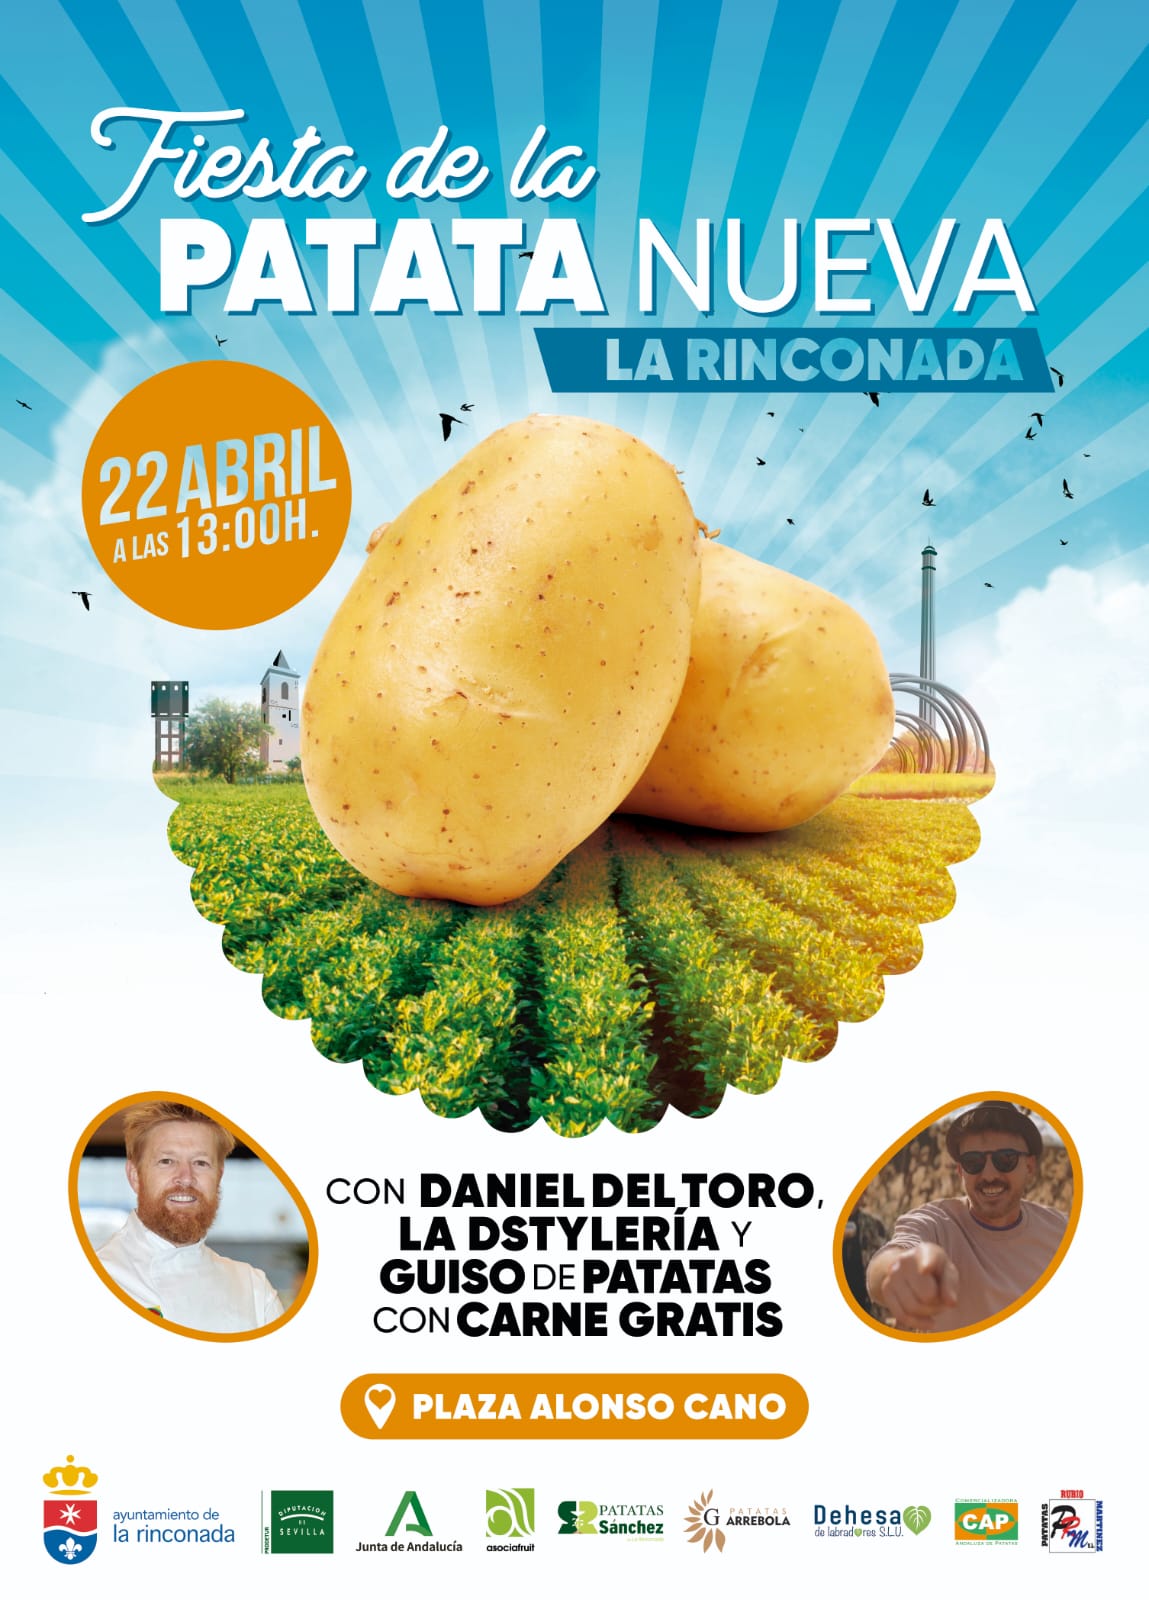 Asociafruit vuelve a colaborar en la organización de la Fiesta de la Patata Nueva de La Rinconada